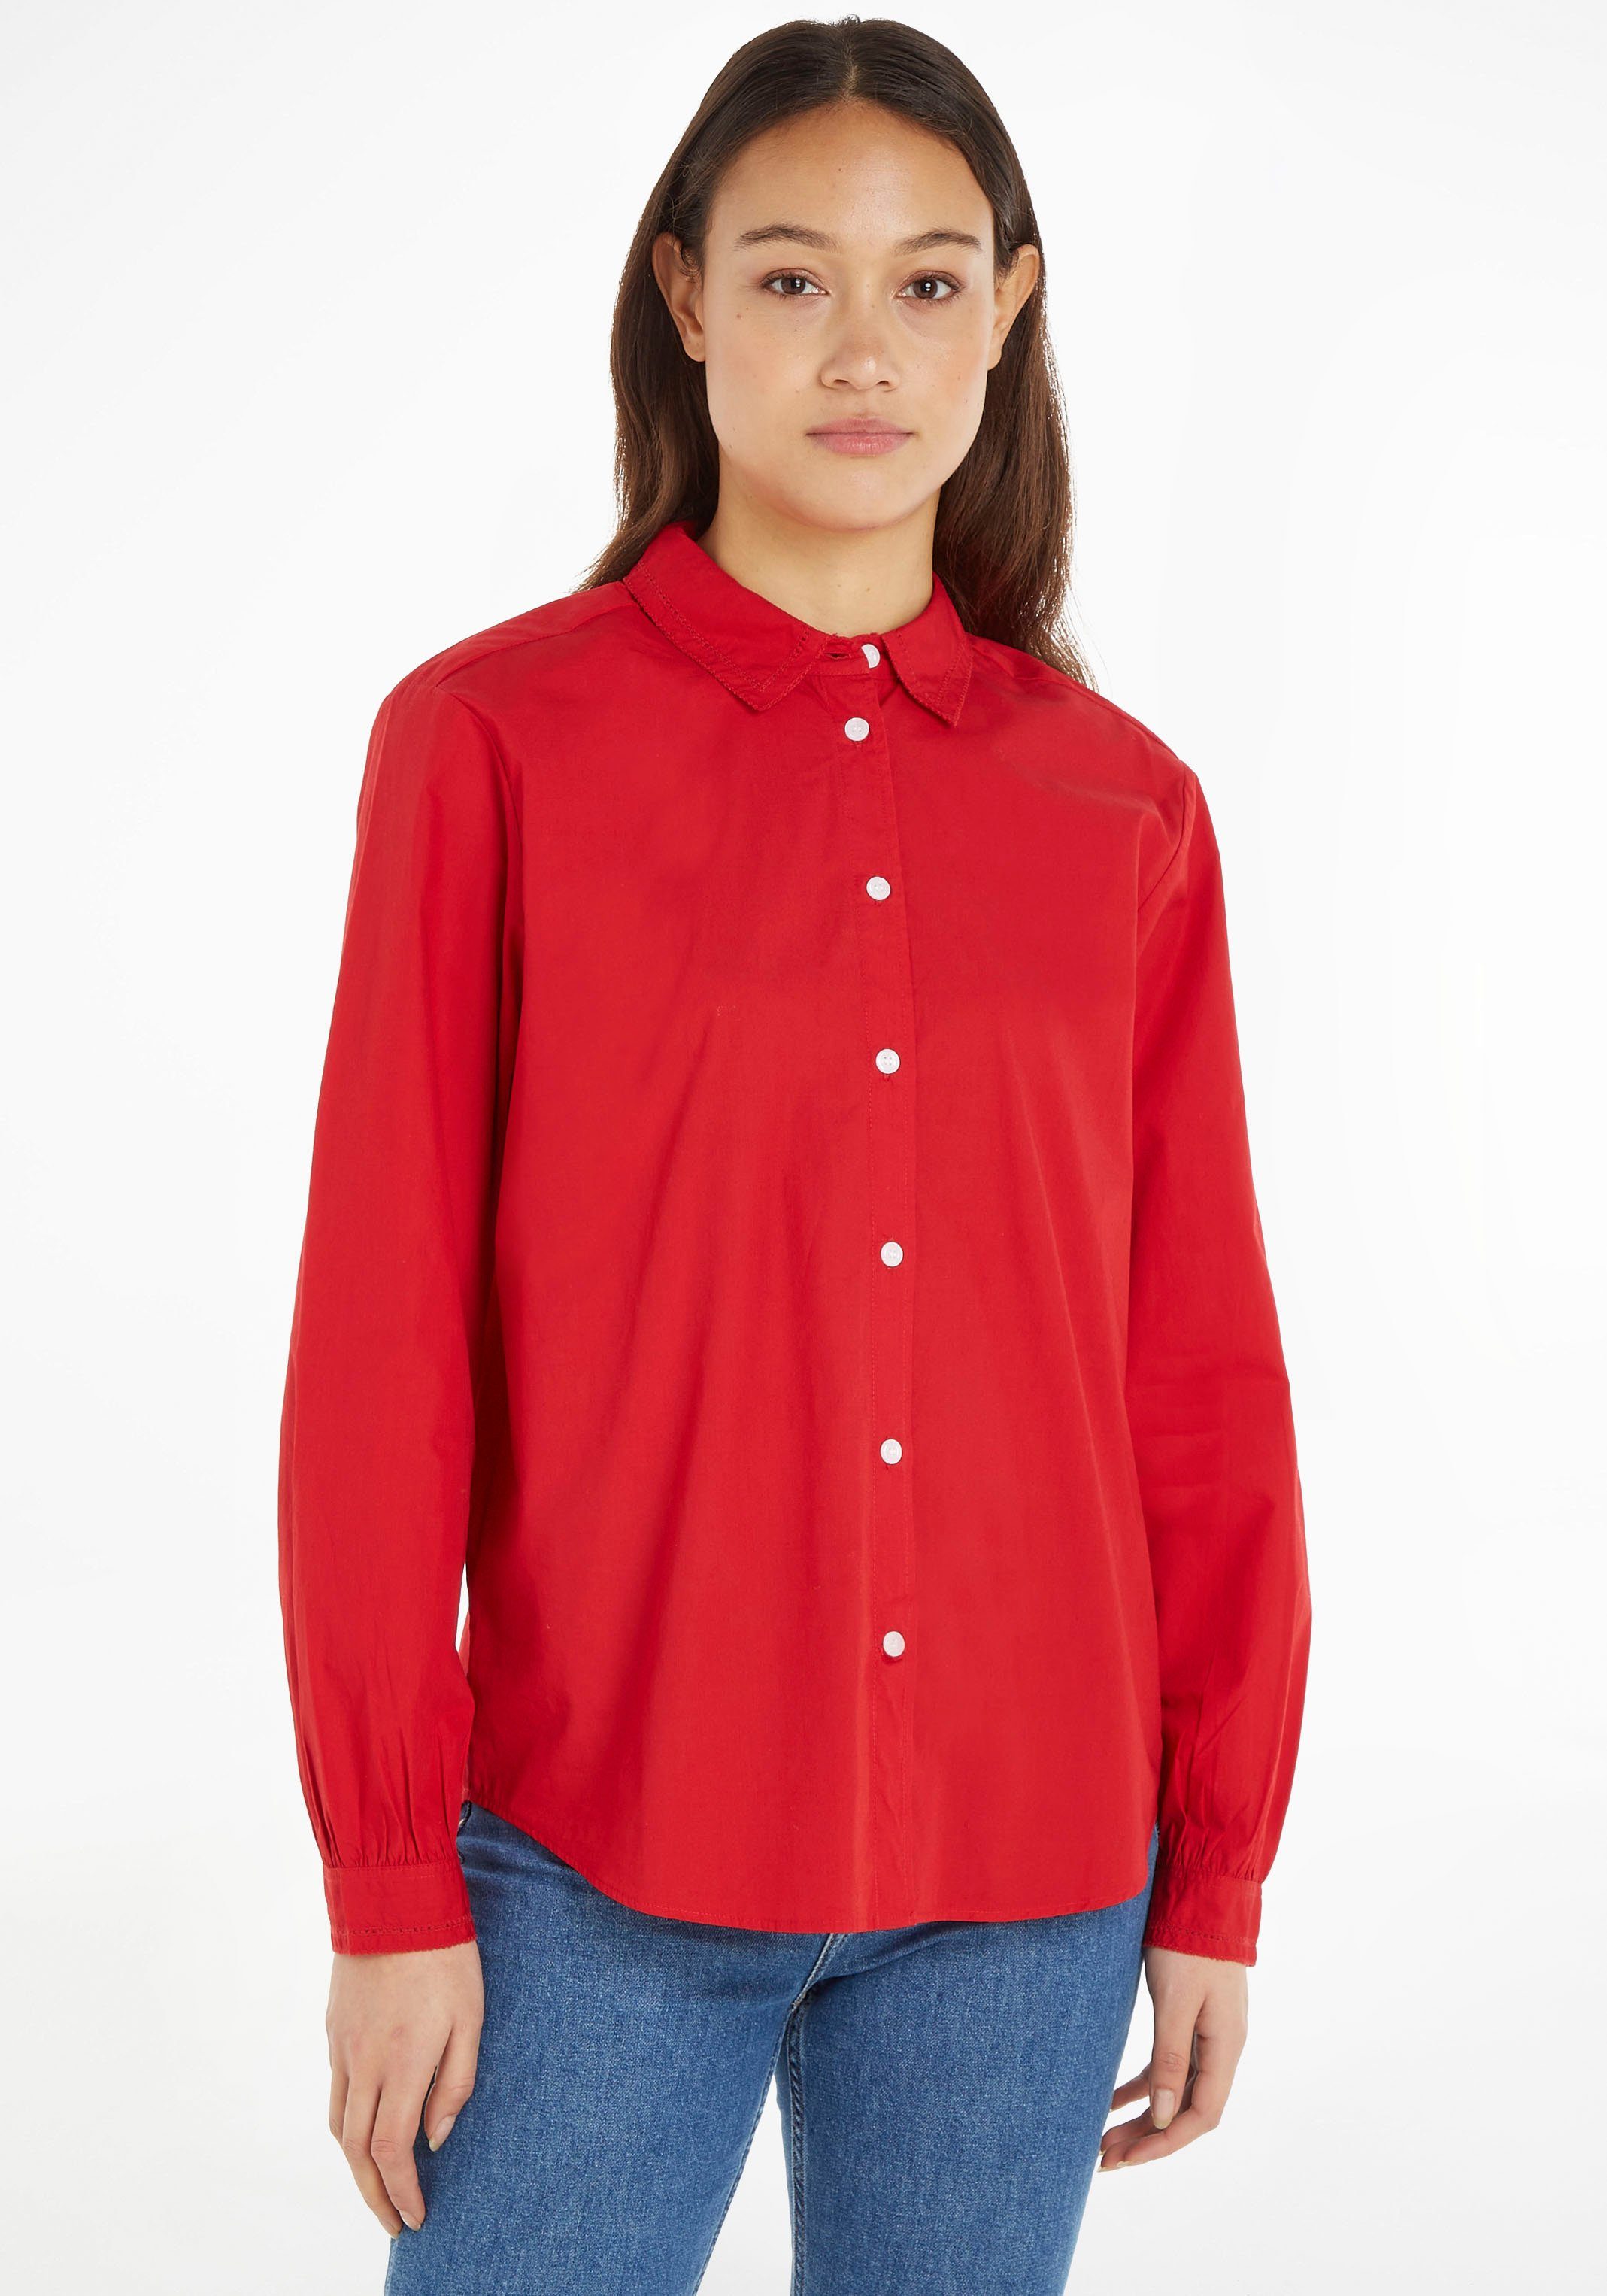 Rote Tommy Hilfiger Blusen für Damen online kaufen | OTTO